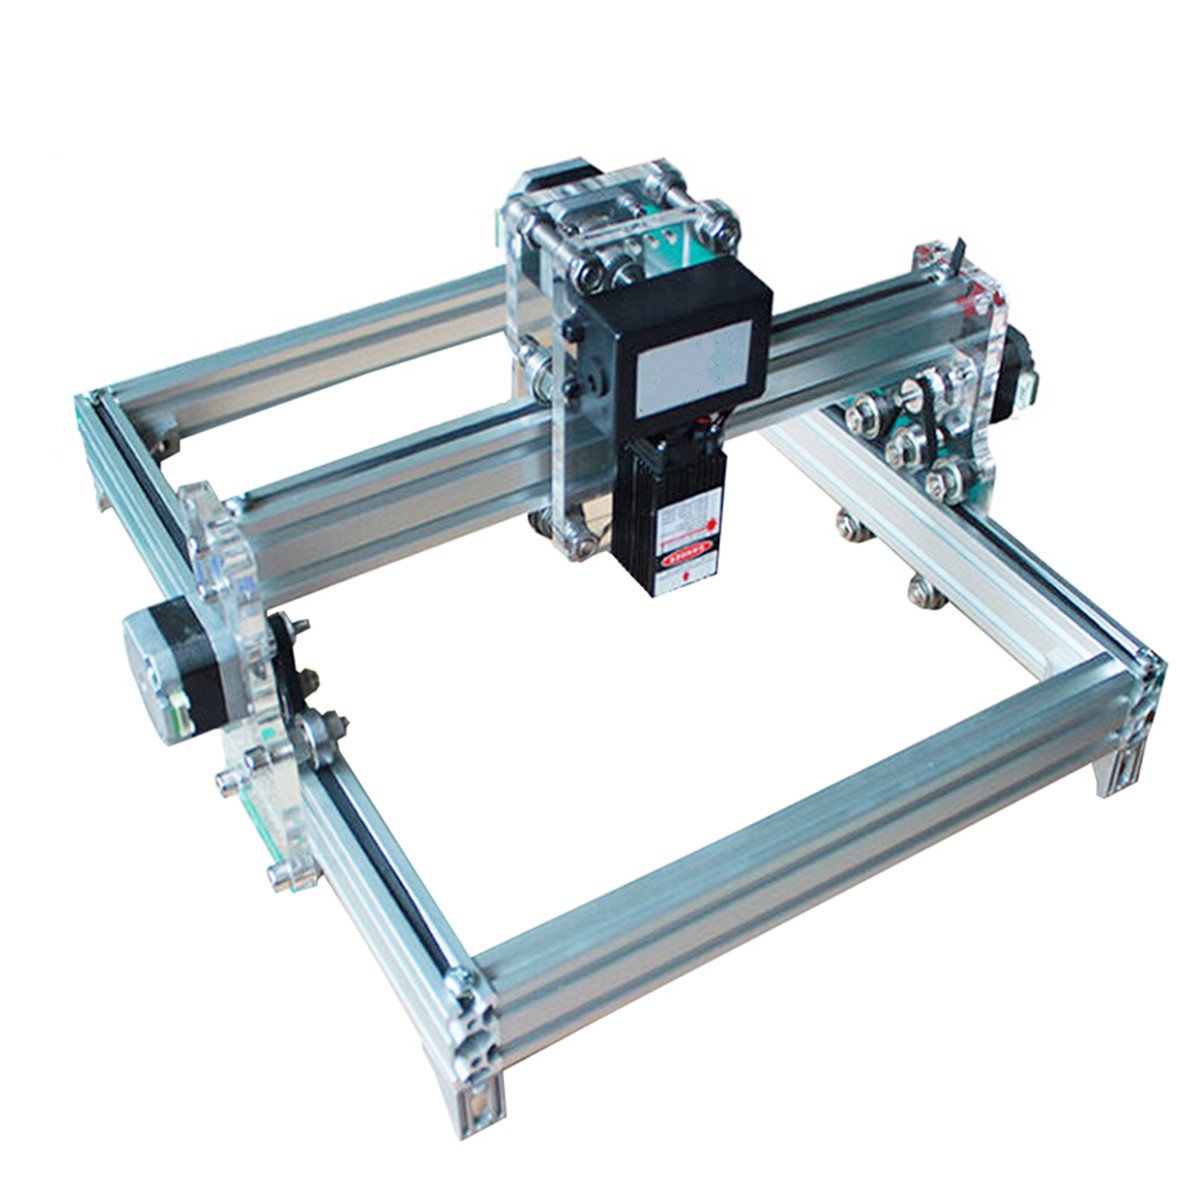 32cm*23 cm DIY 500mW Laser Engraving Machine Laser Engraver Printer Carving Desktop CNC Kit 1